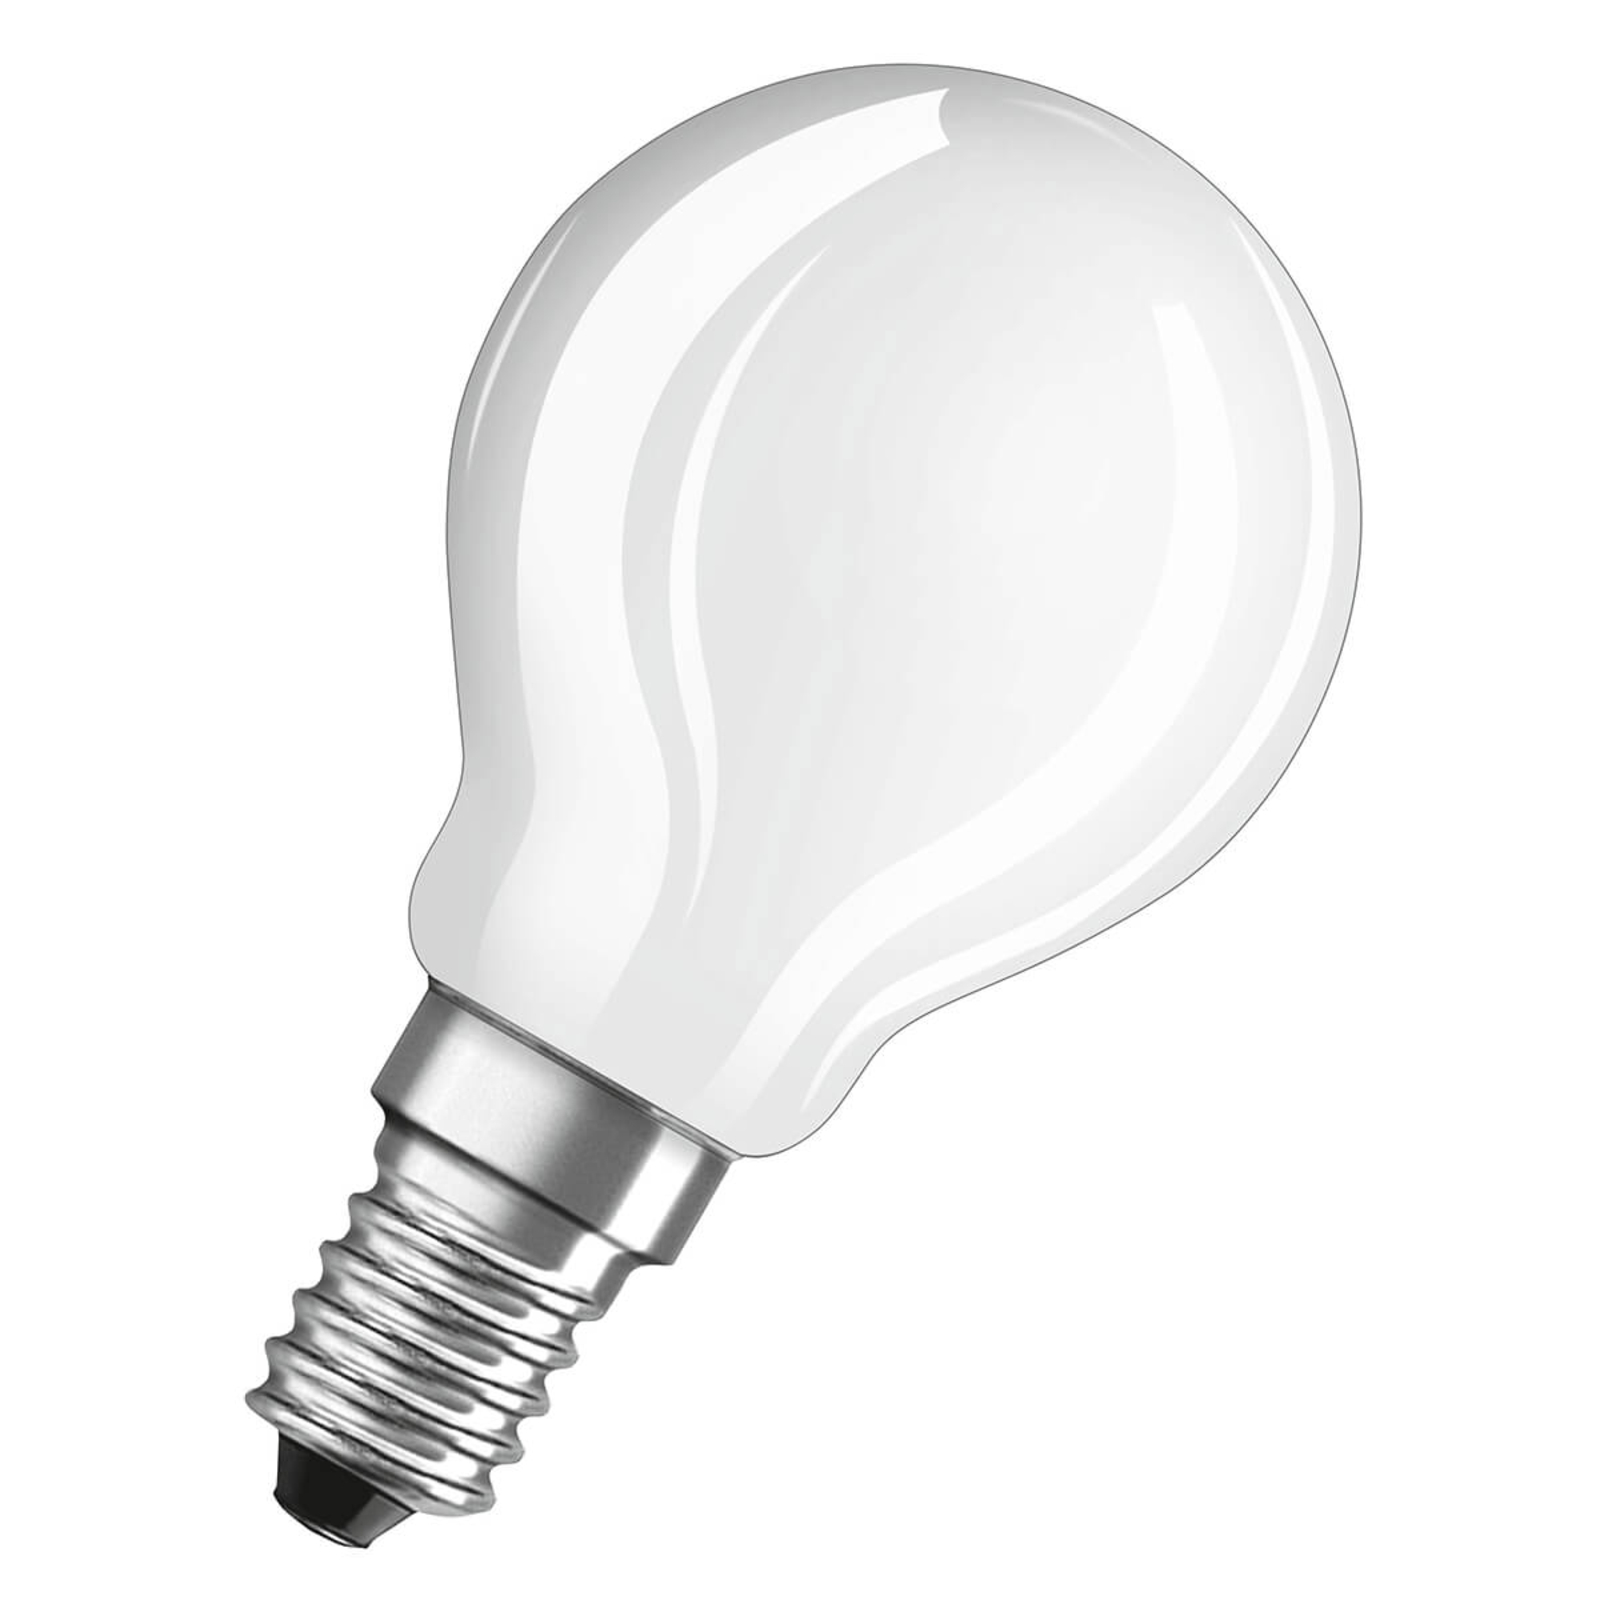 LED lámpa E14 4W, meleg fehér, 470 lumen, 3 db